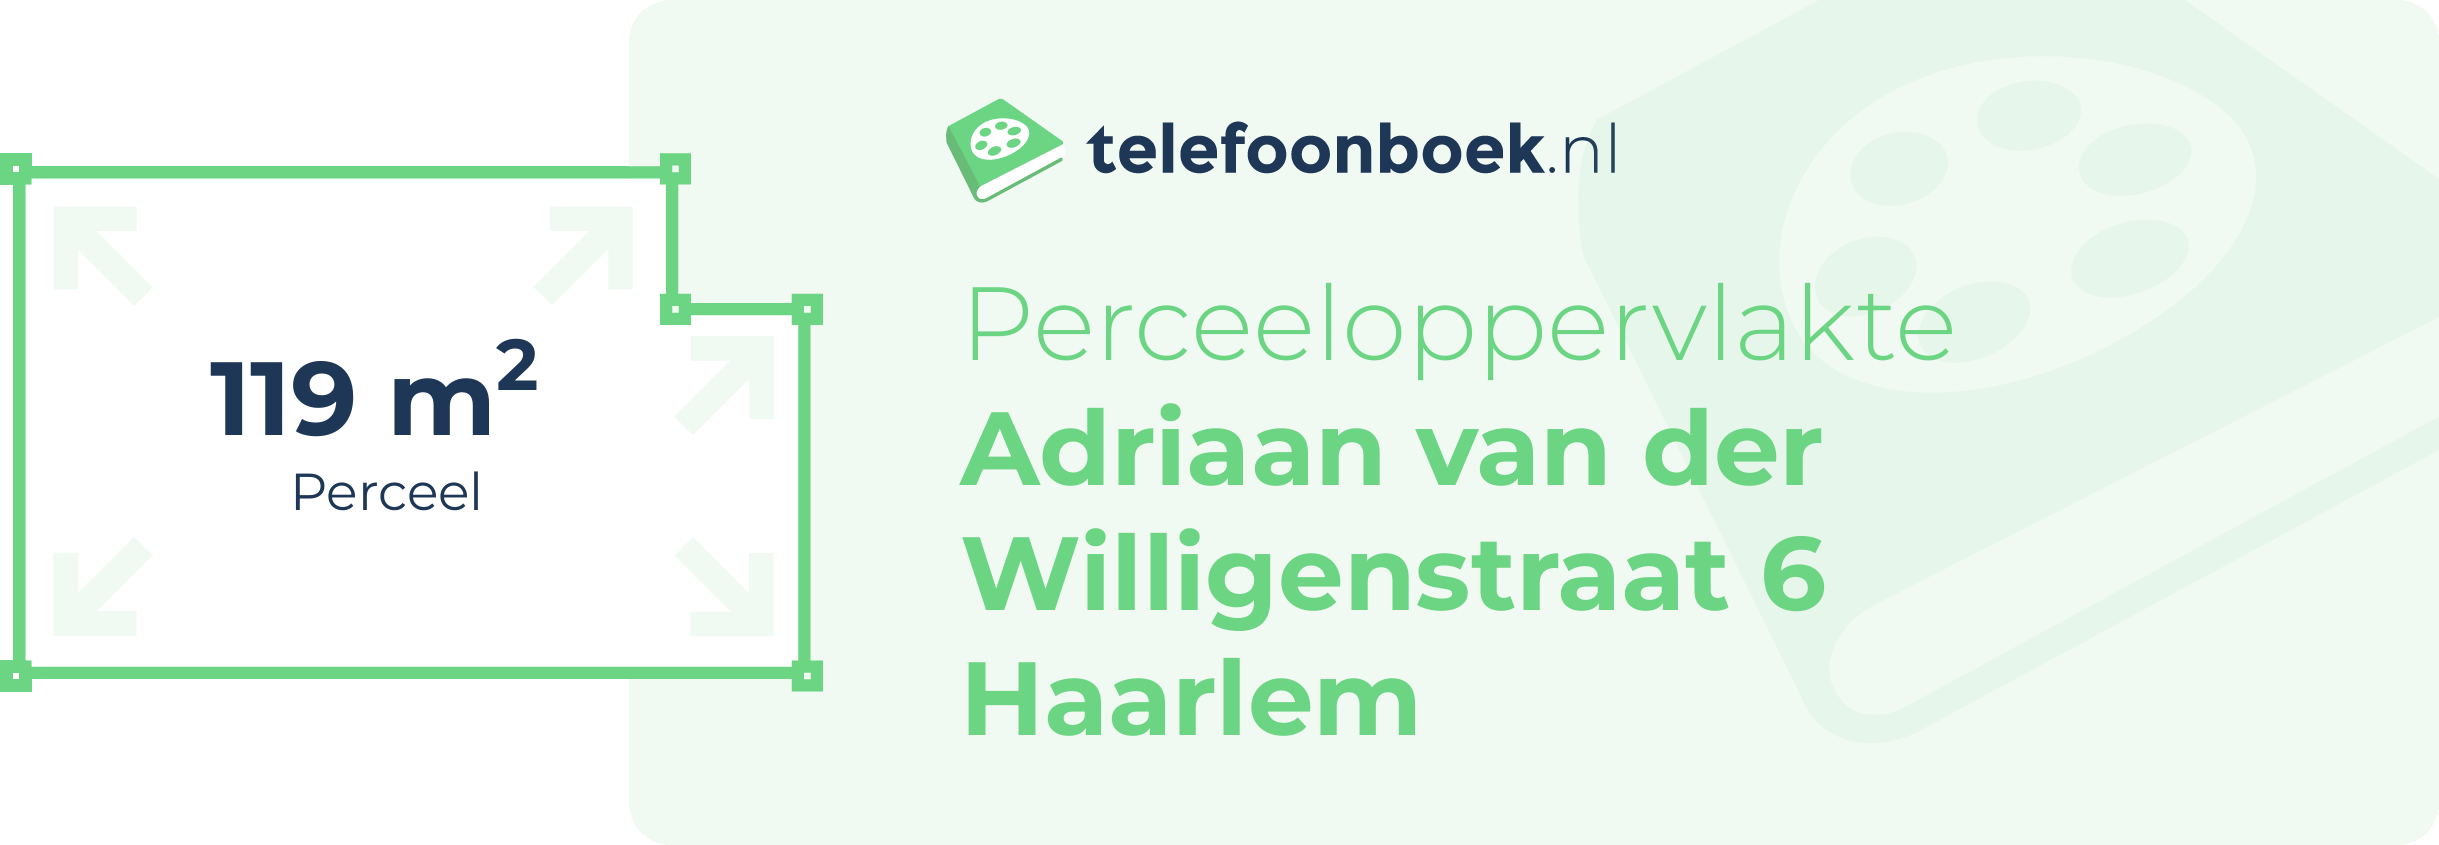 Perceeloppervlakte Adriaan Van Der Willigenstraat 6 Haarlem